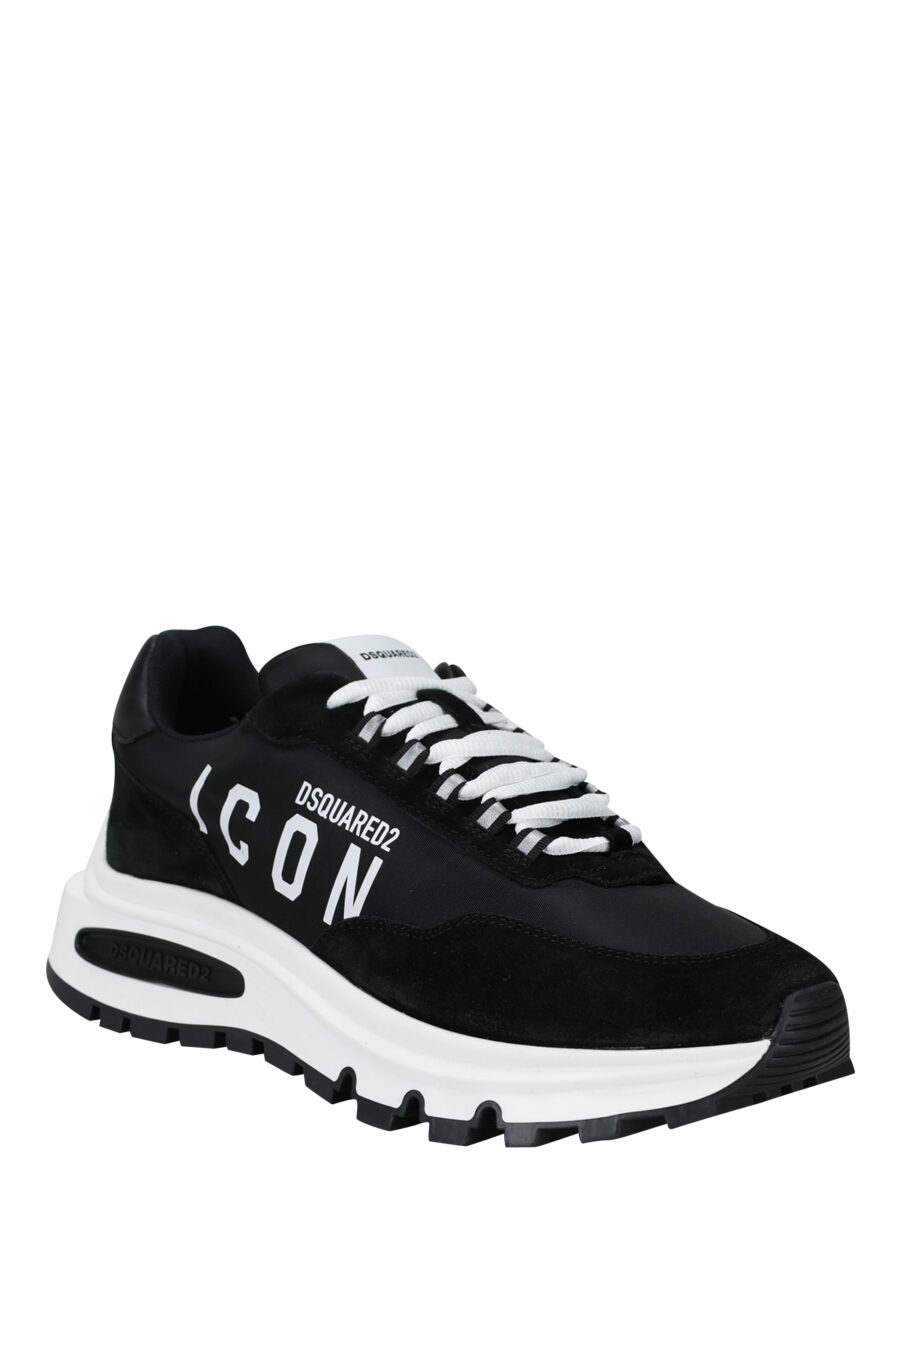 Schwarze Schuhe mit Mini-Logo "Icon" und weißer Sohle mit Innenschlauch - 8055777249321 1